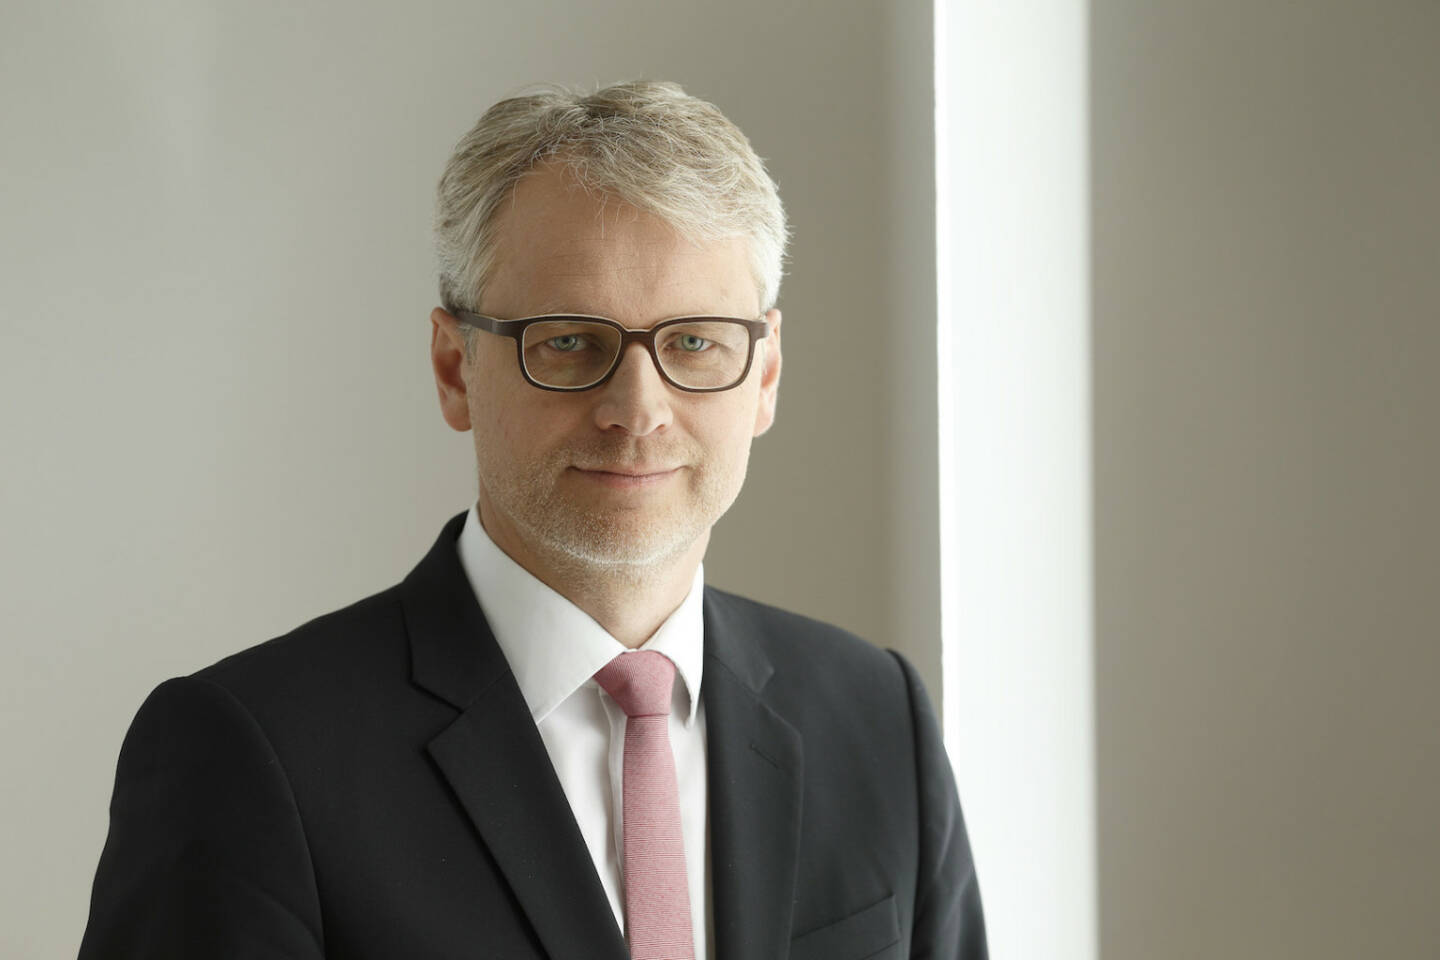 Jörg Dehning, Analyst für den Sektor Food & Beverage bei der DJE Kapital AG sowie Fondsmanager des DJE – Agrar & Ernährung, Credit: DJE